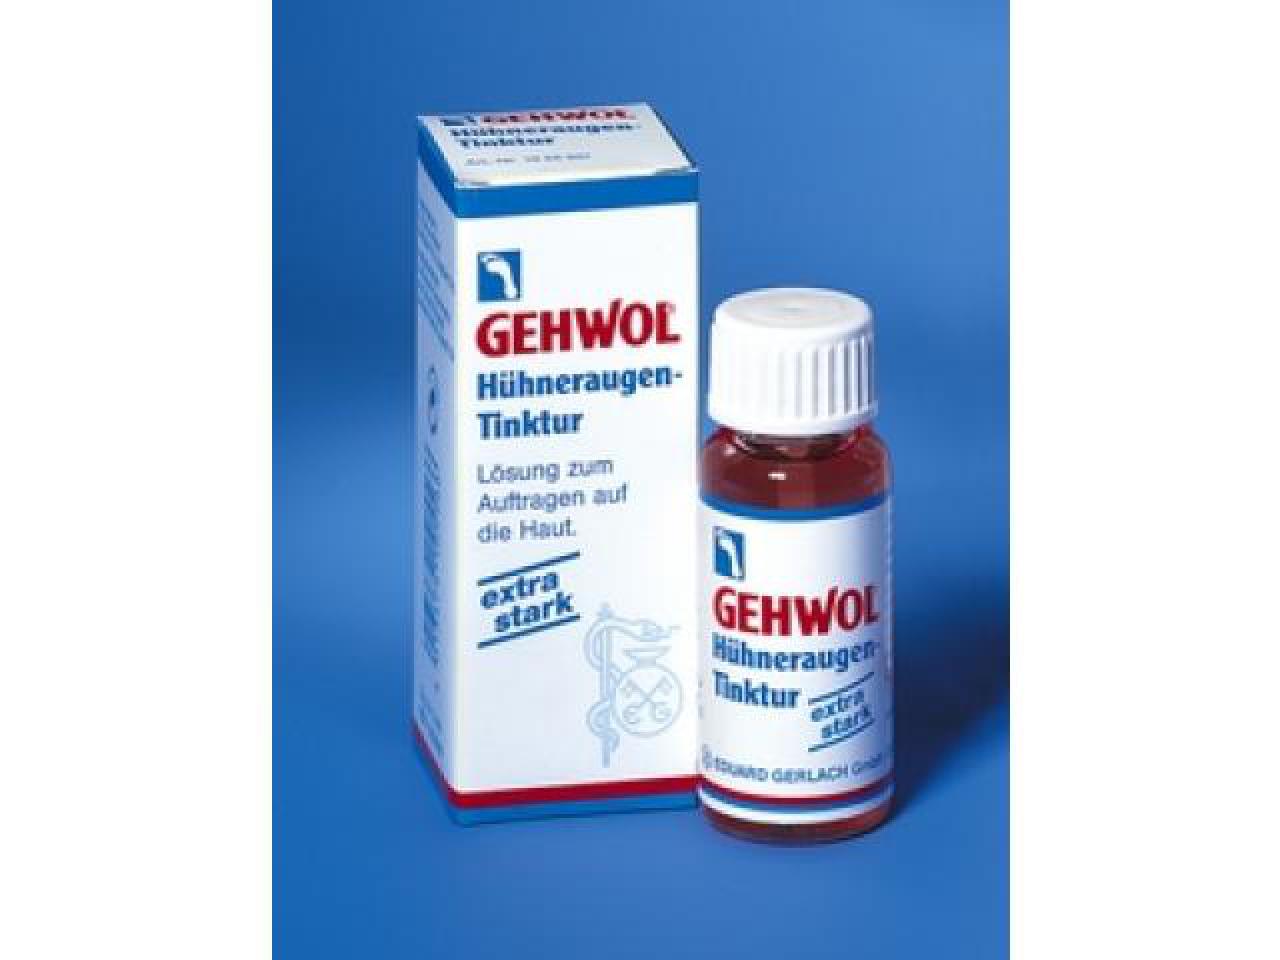 GEHWOL Hühneraugen-Tinktur 15 ml Fl. mit Auftragspatel - Hühneraugentinktur